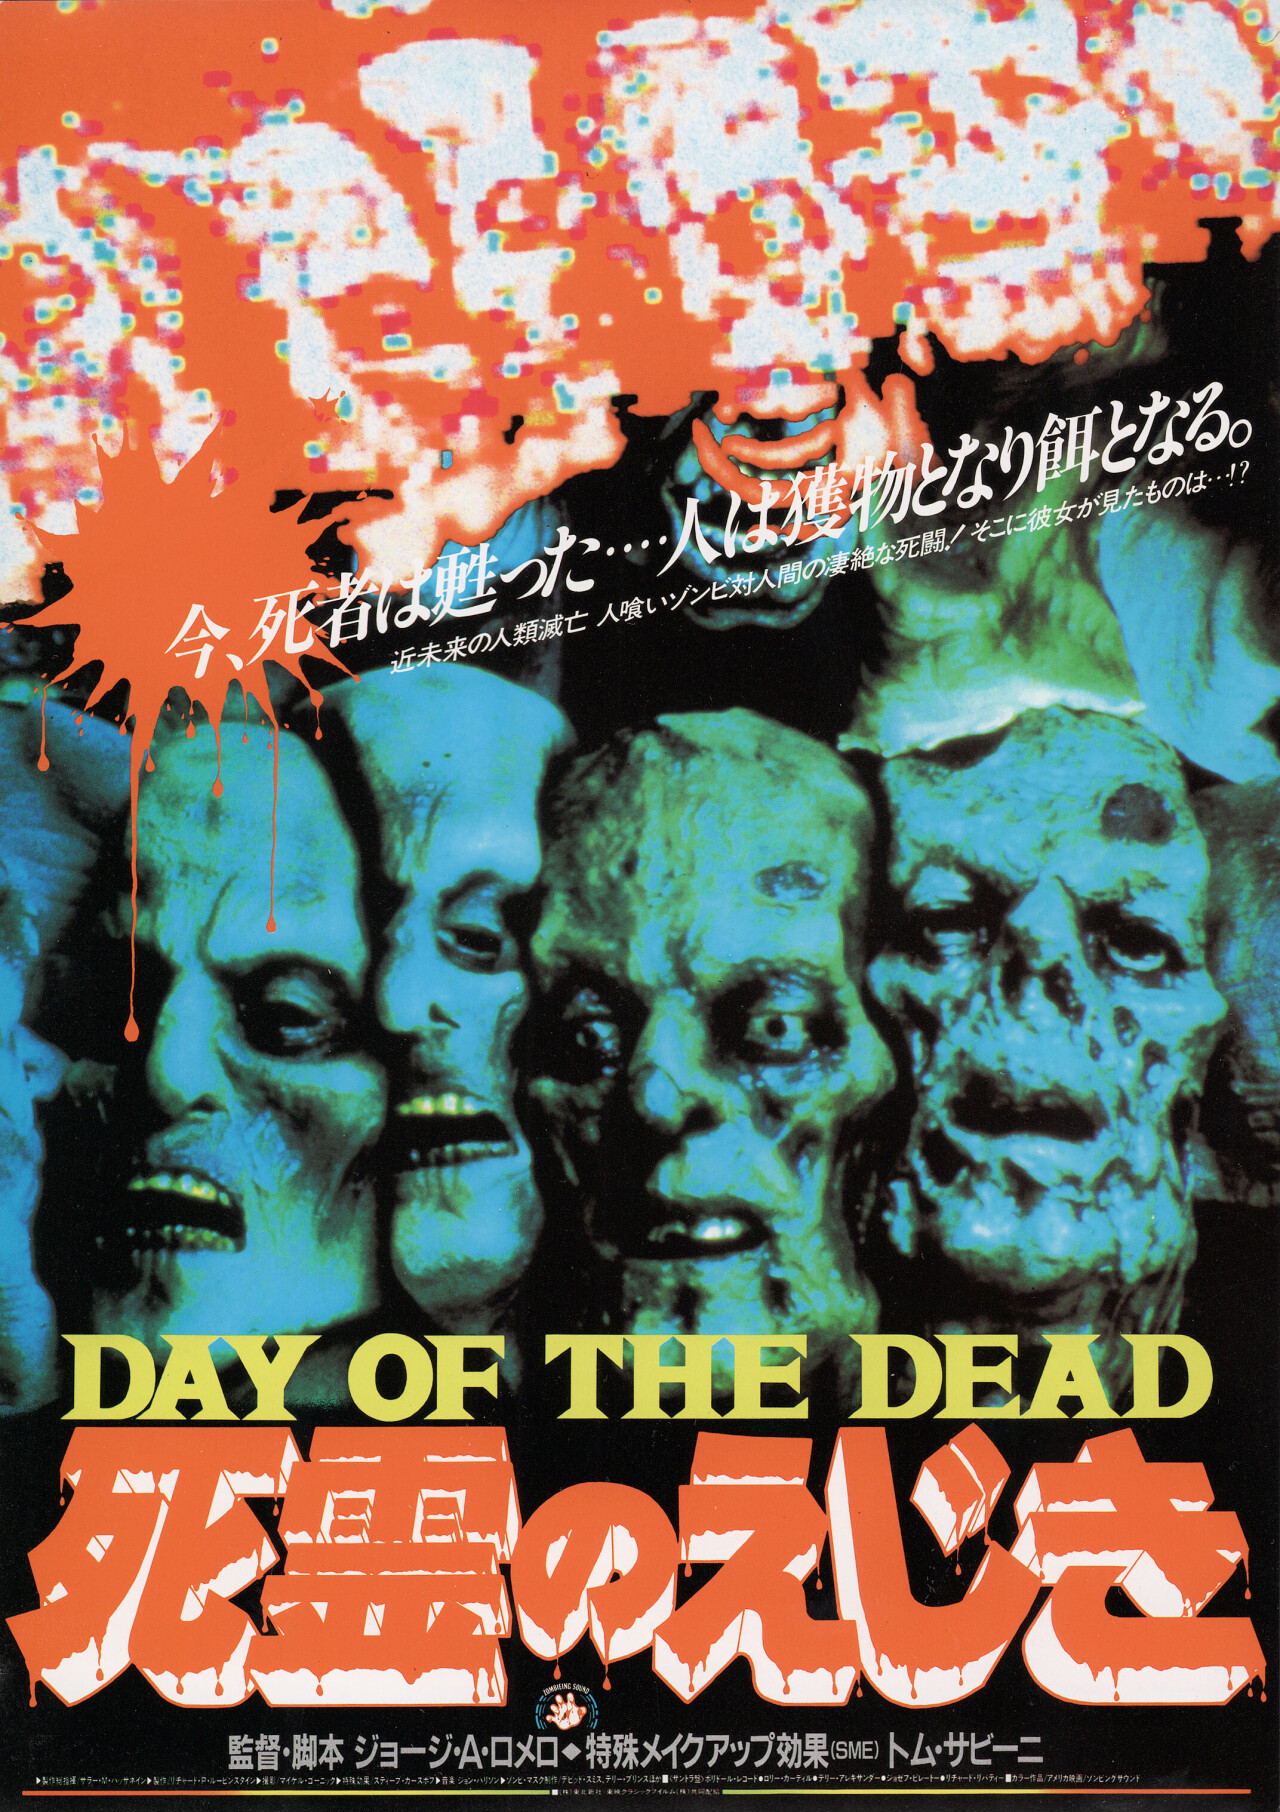 День мертвых (Day of the Dead, 1985), режиссёр Джордж А. Ромеро, японский постер к фильму (ужасы, 1986 год)_1